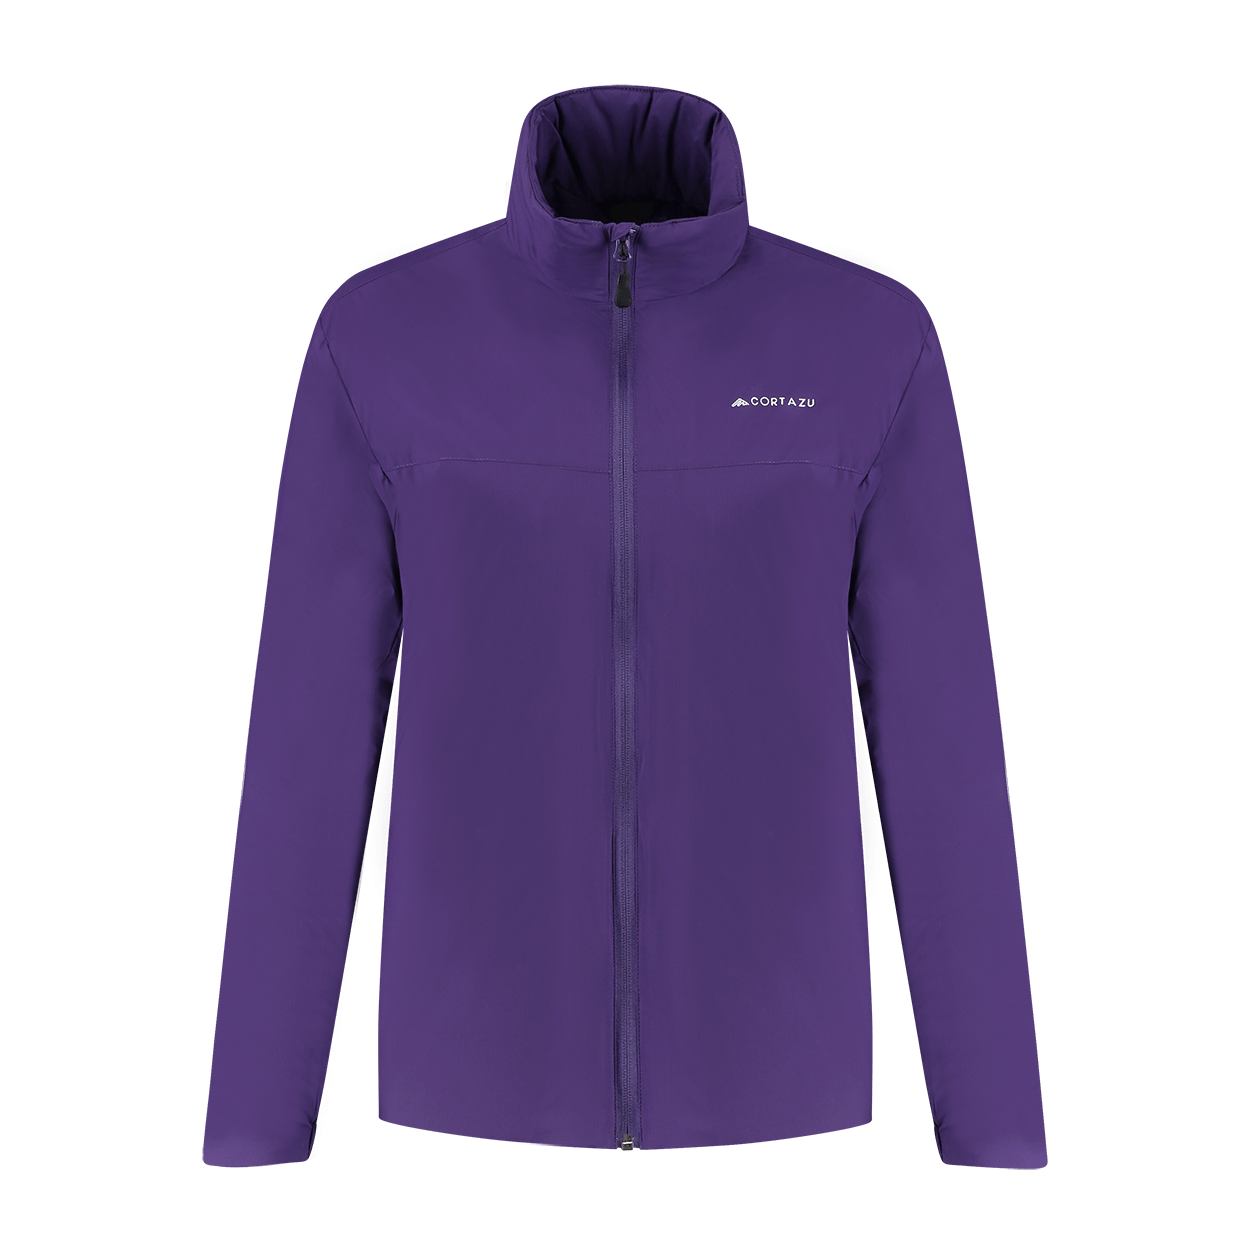 Men's Mid-Layer Jackets - Cortazu - Premium Outdoor Clothing